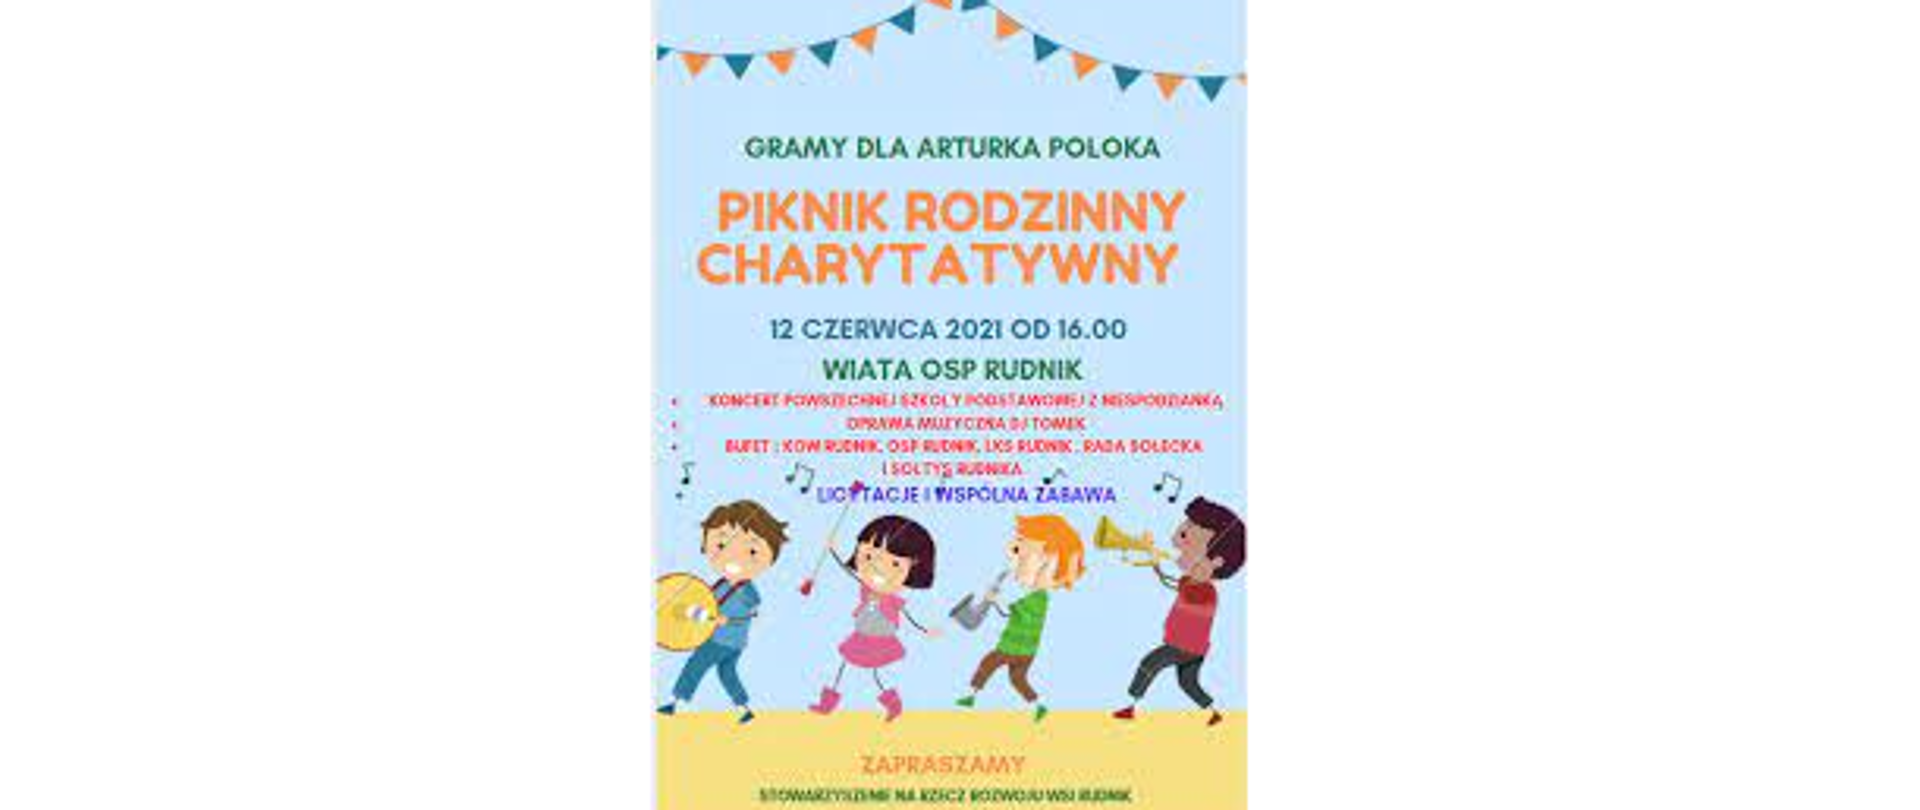 Hasło Pikniku: Gramy dla Arturka Poloka, 12 czerwca 2021 roku od godziny 16, wiata OSP Rudnik. Jako ilustracja grające na instrumentach muzycznych dzieci.